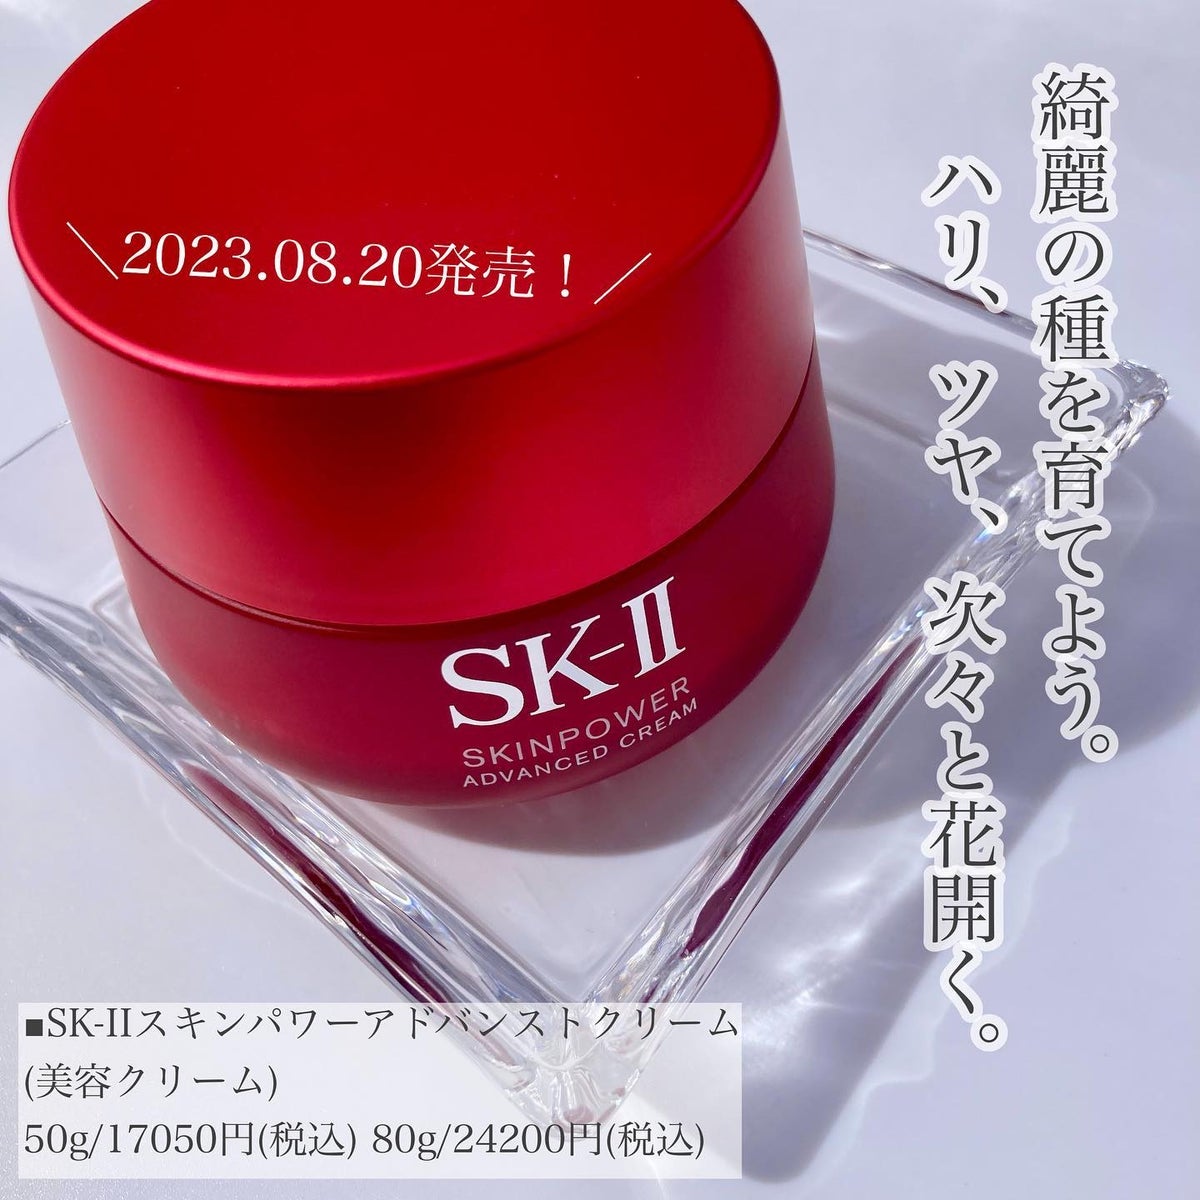 新製品SK-II  スキンパワー クリーム(美容クリーム)